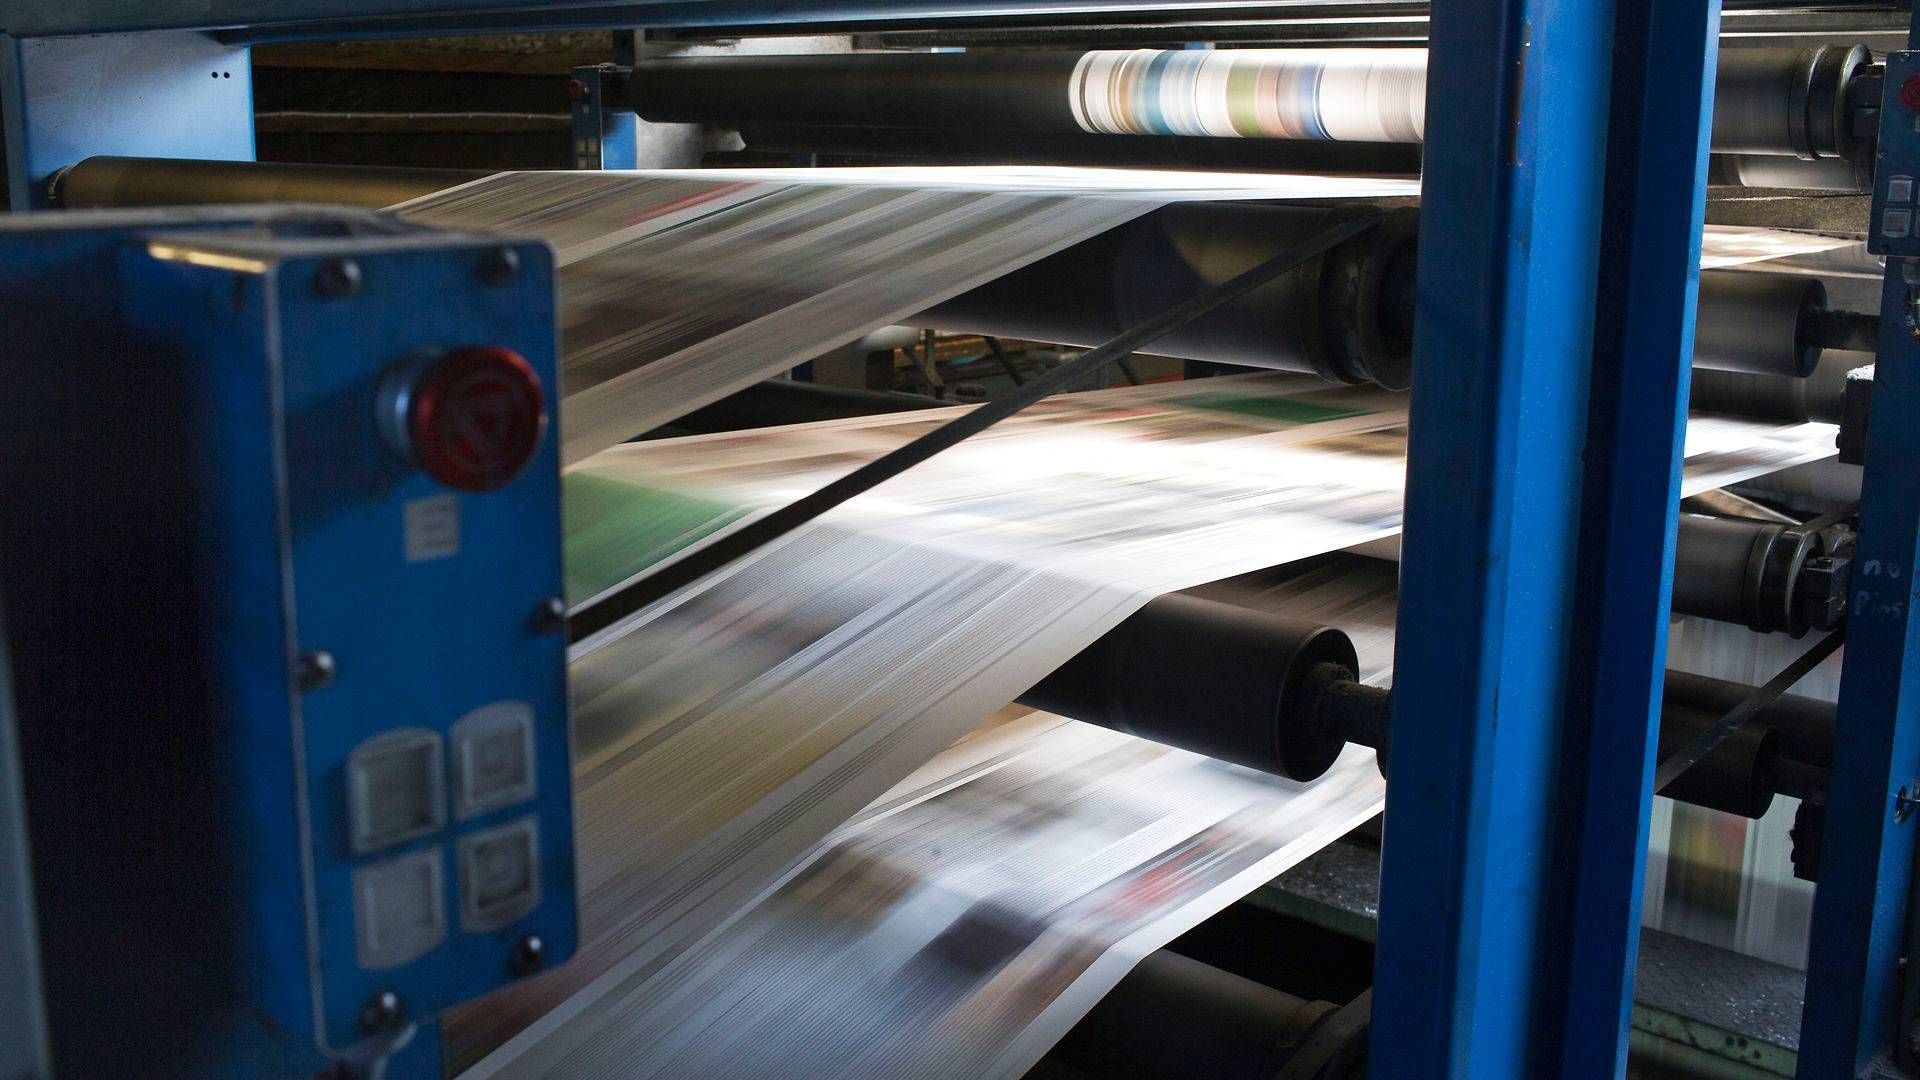 Den trykte avis leverer ikke bare data. Den indgår i hverdagen. | Foto: Mathias Svold/Jyllands-Posten/Ritzau Scanpix